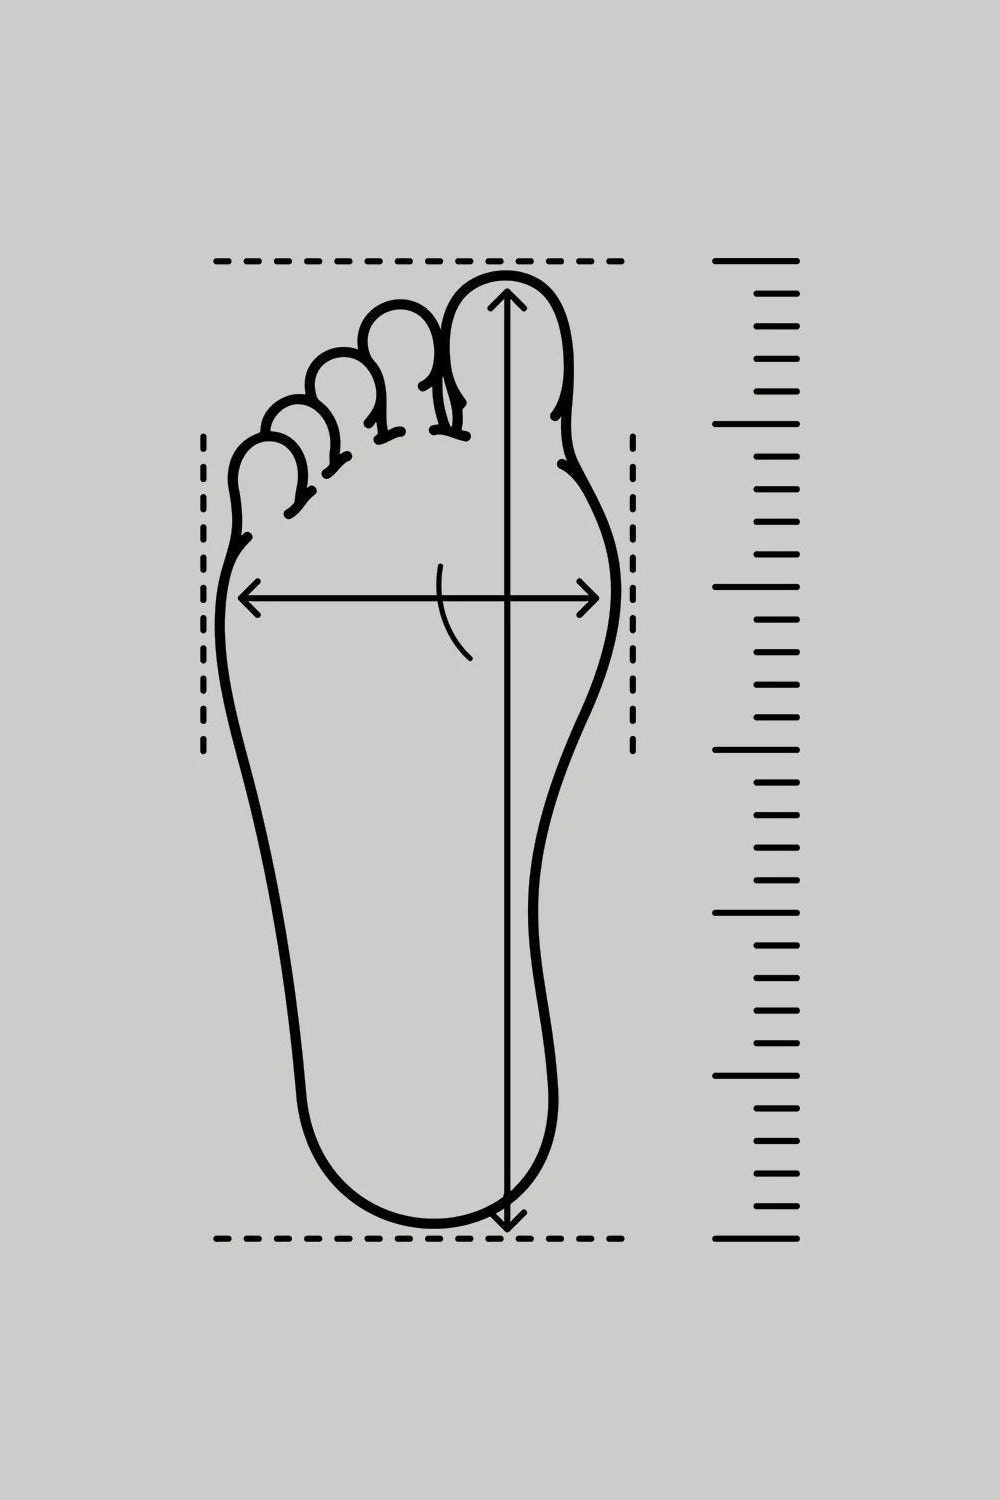 Open Toe Slippers Men Unisex Cross Sandals Leather Gift - Etsy